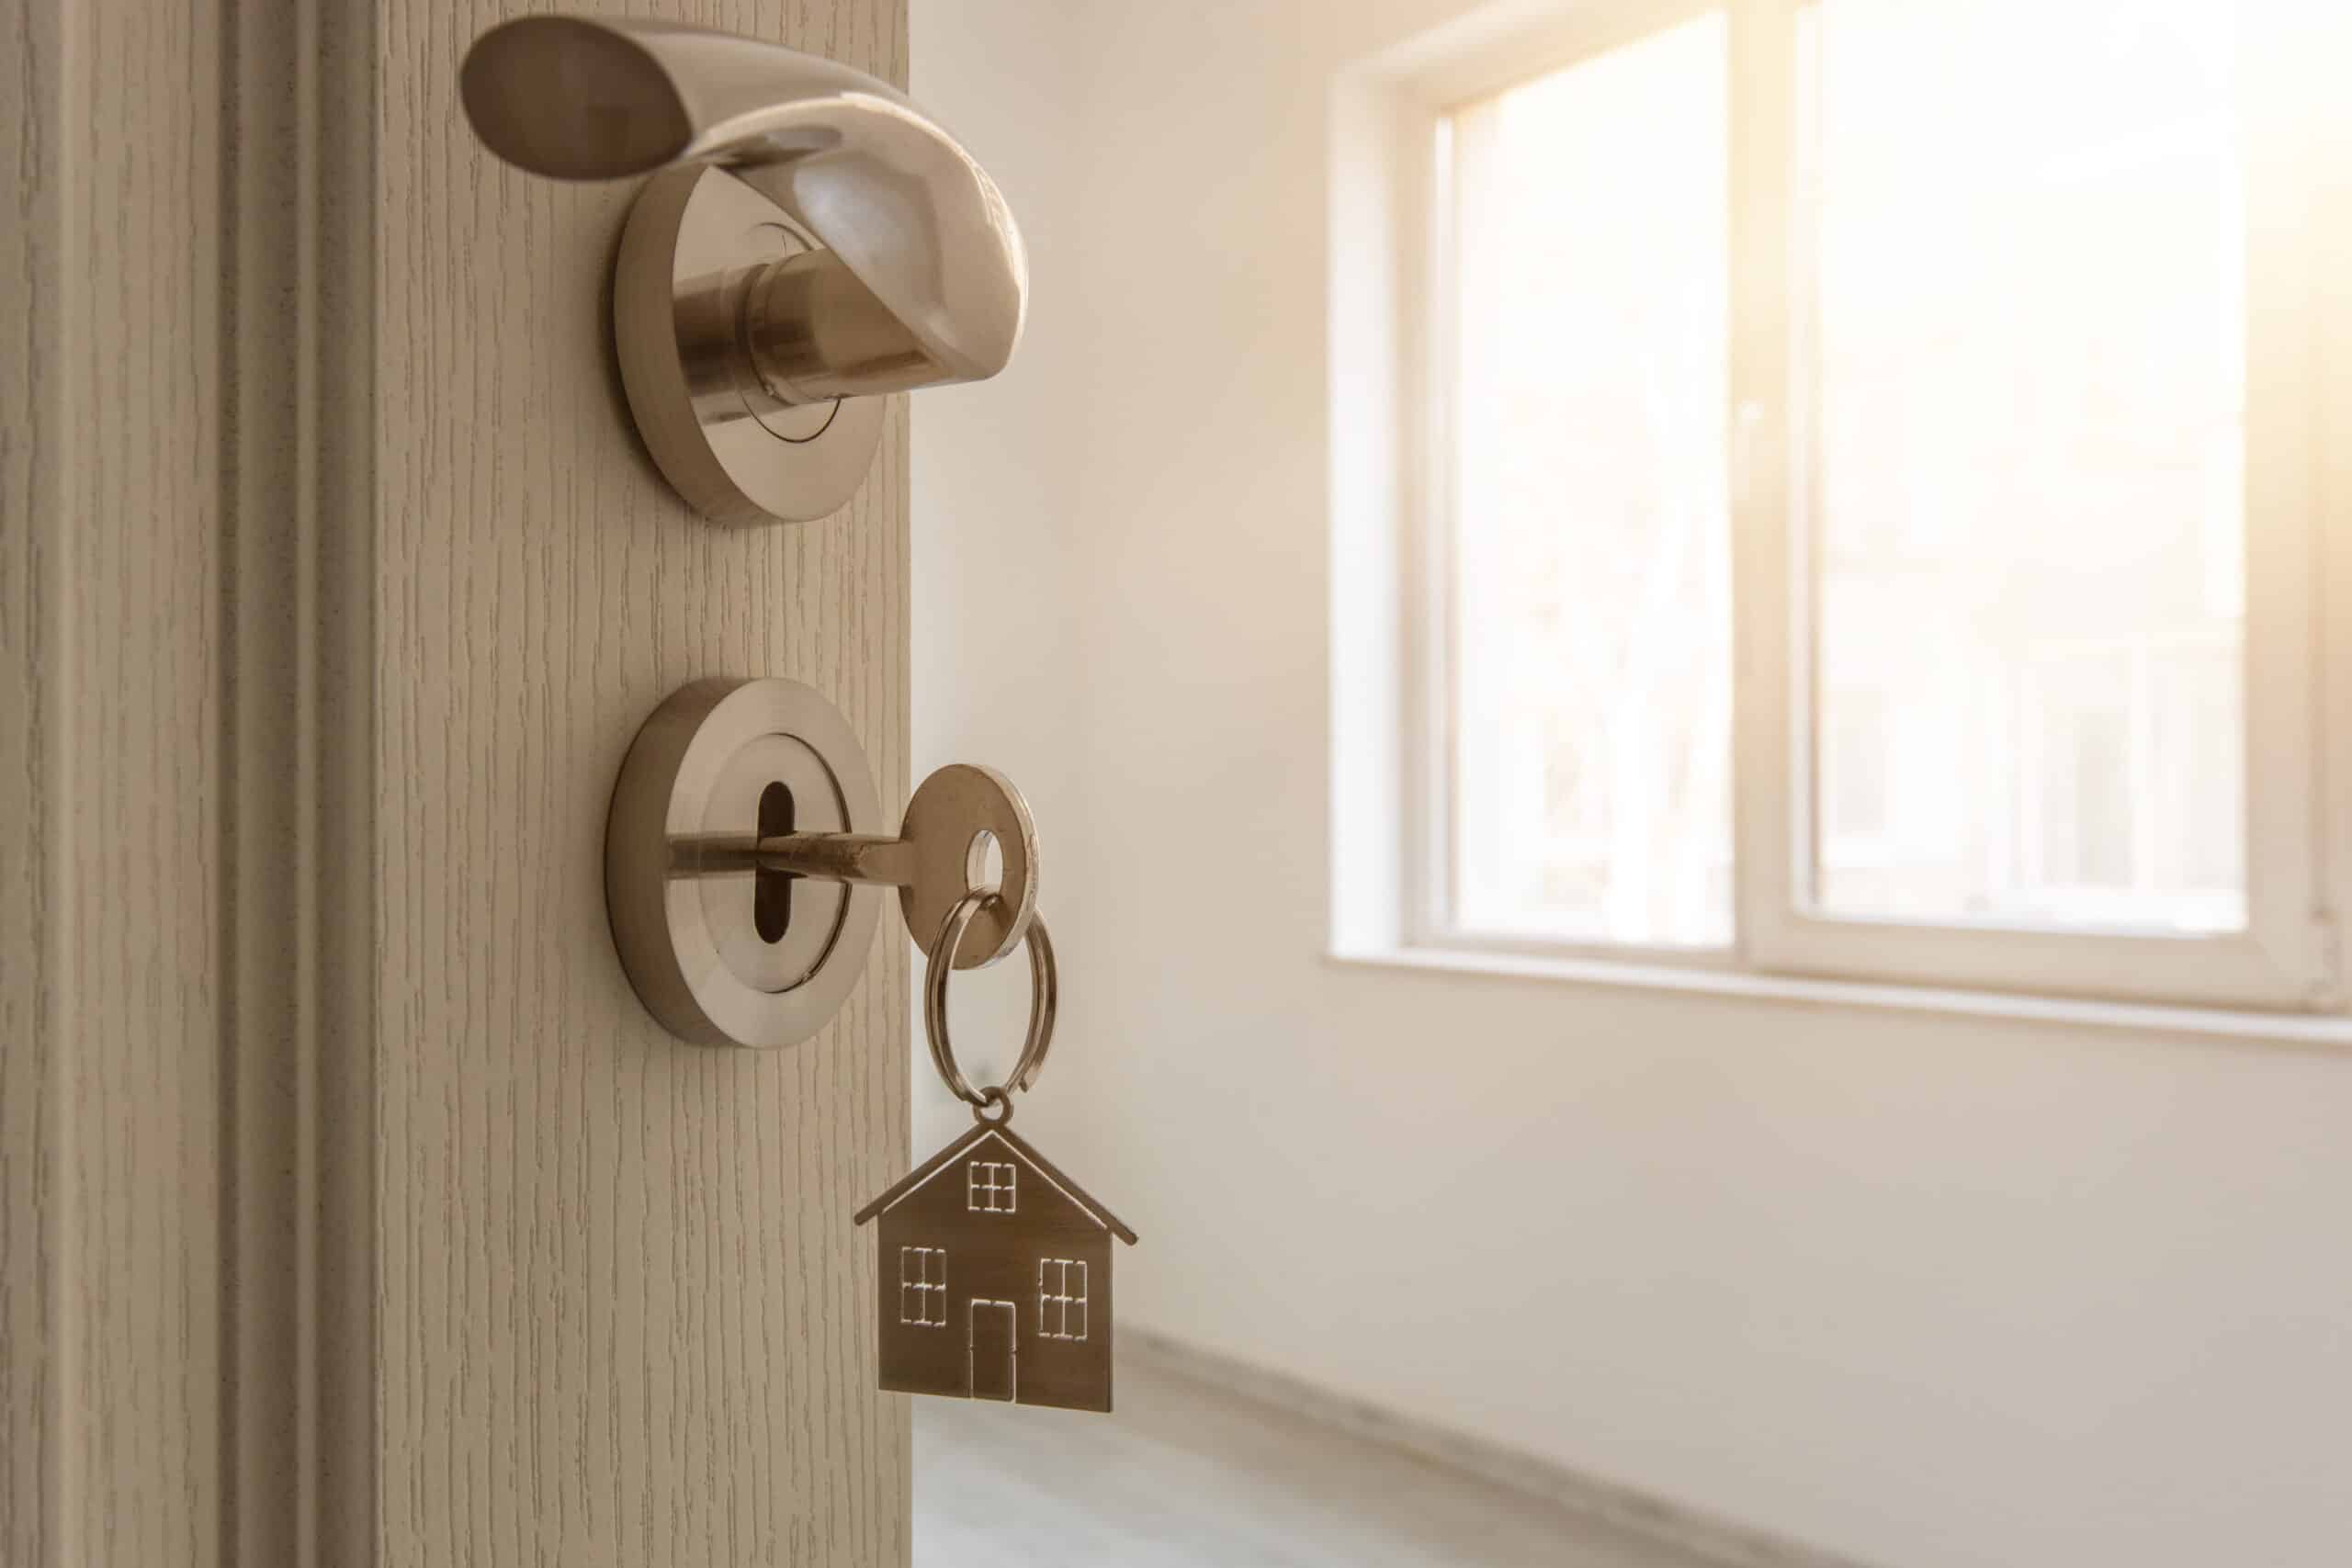 Can a Landlord Keep a Set of Keys?